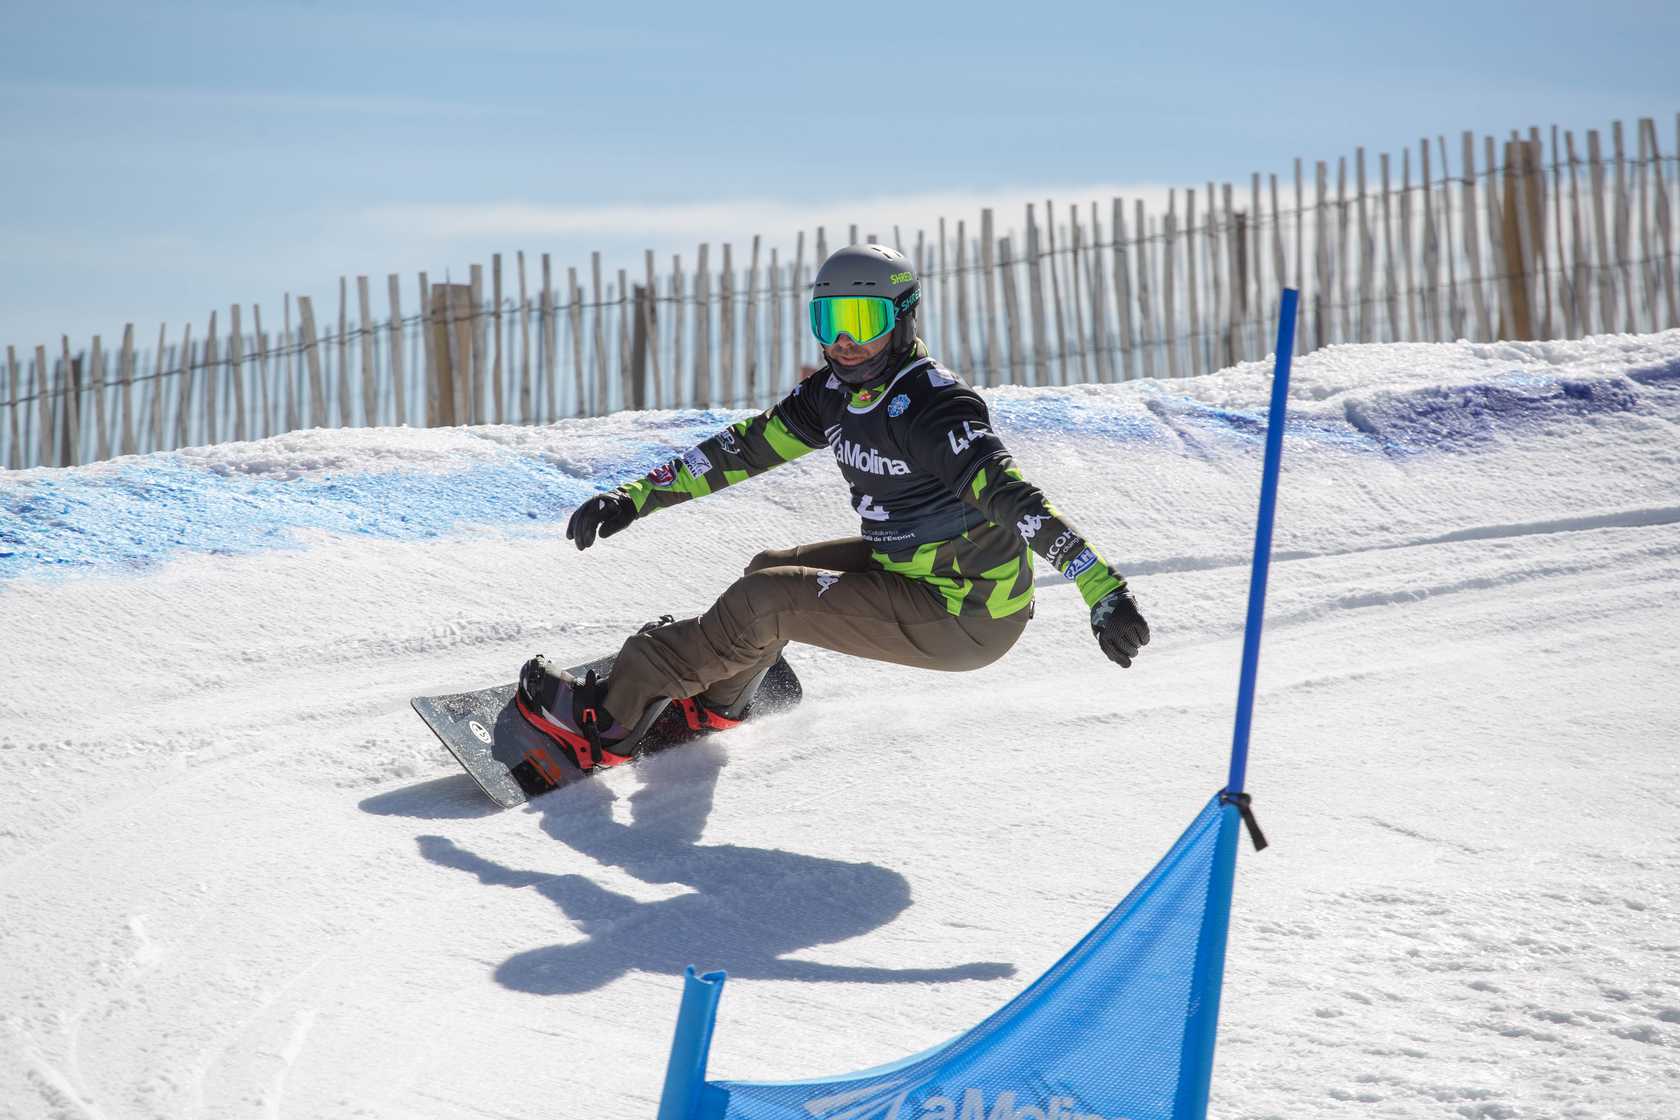 Comité Paralímpico Italiano – En La Molina, el snowboard azul vuelve a triunfar